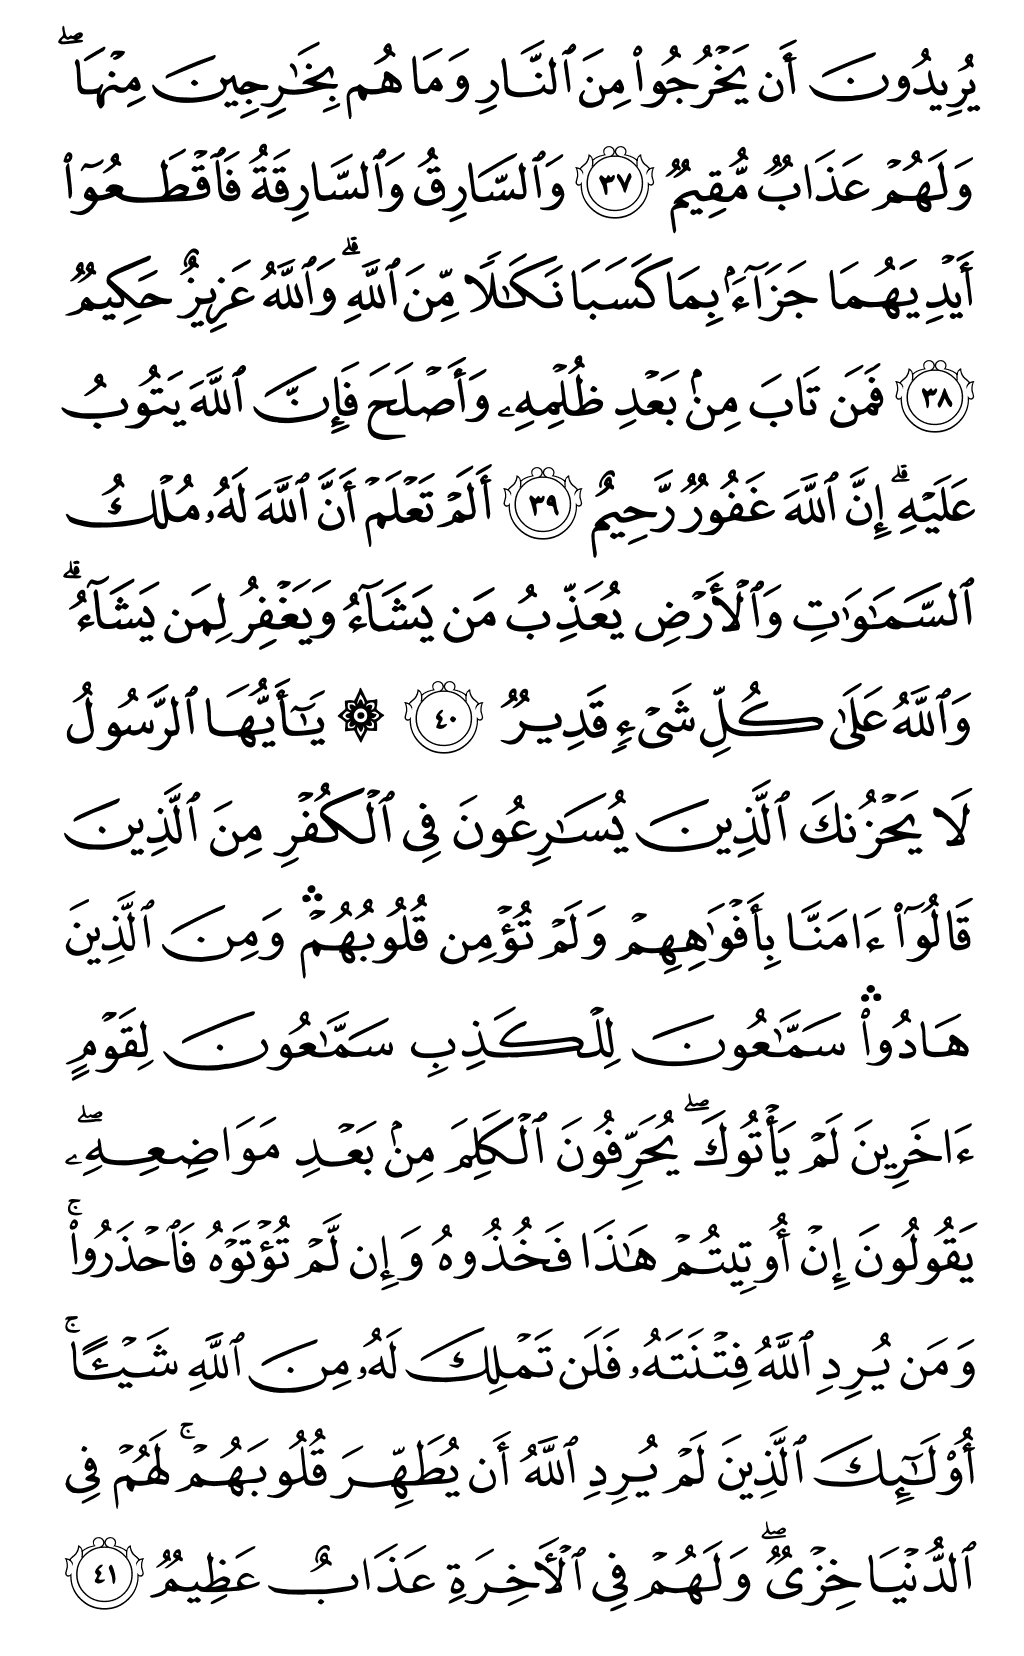 الصفحة رقم 114 من القرآن الكريم